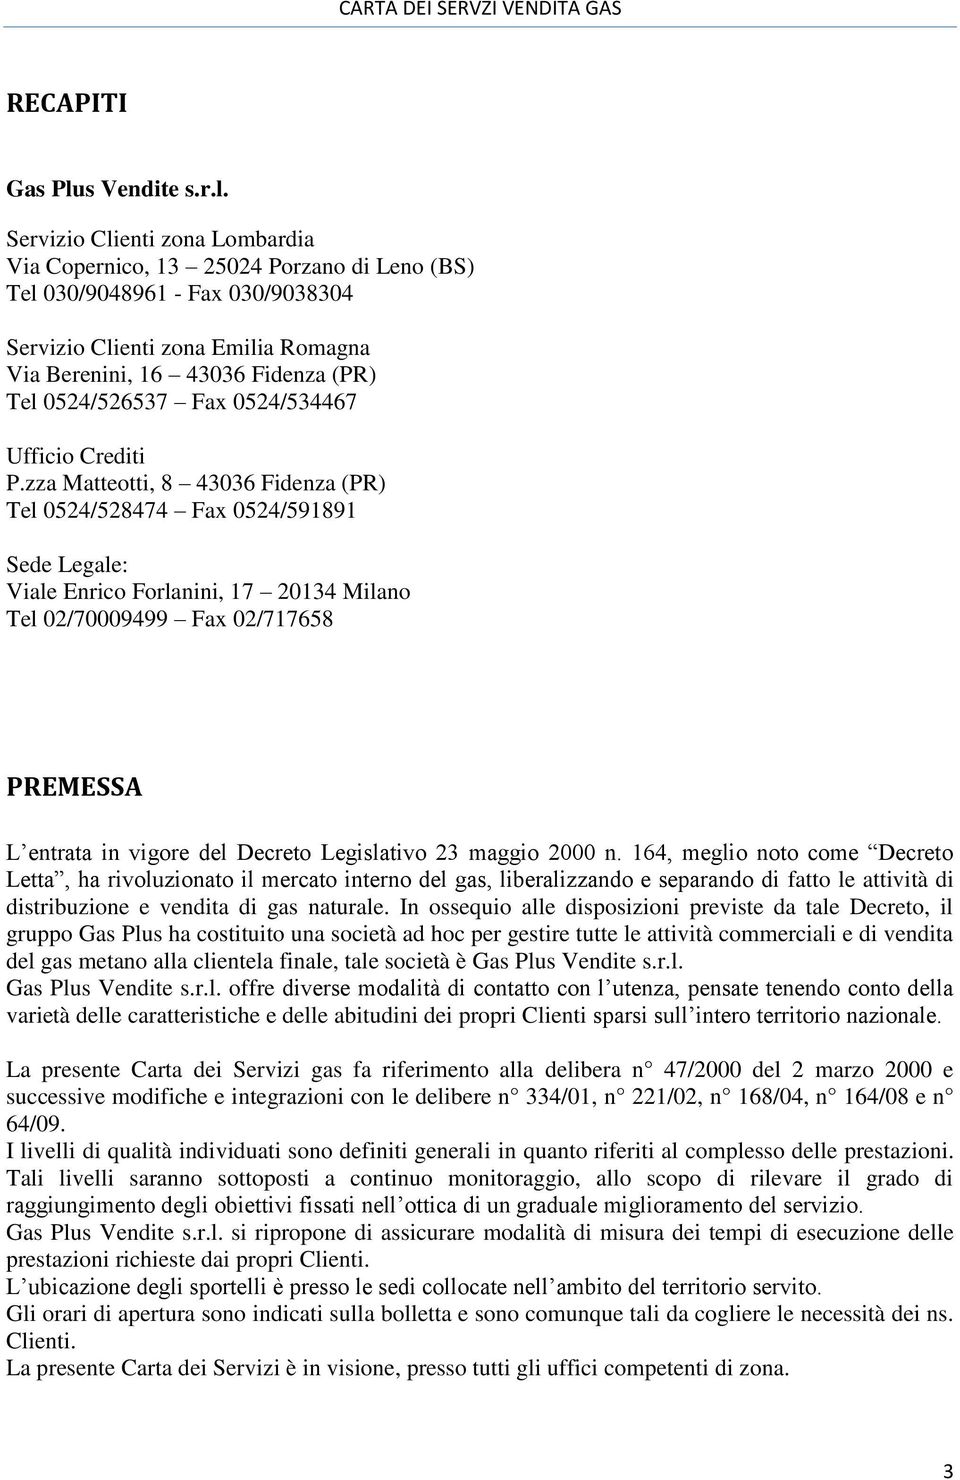 Servizio Clienti zona Lombardia Via Copernico, 13 25024 Porzano di Leno (BS) Tel 030/9048961 - Fax 030/9038304 Servizio Clienti zona Emilia Romagna Via Berenini, 16 43036 Fidenza (PR) Tel 0524/526537